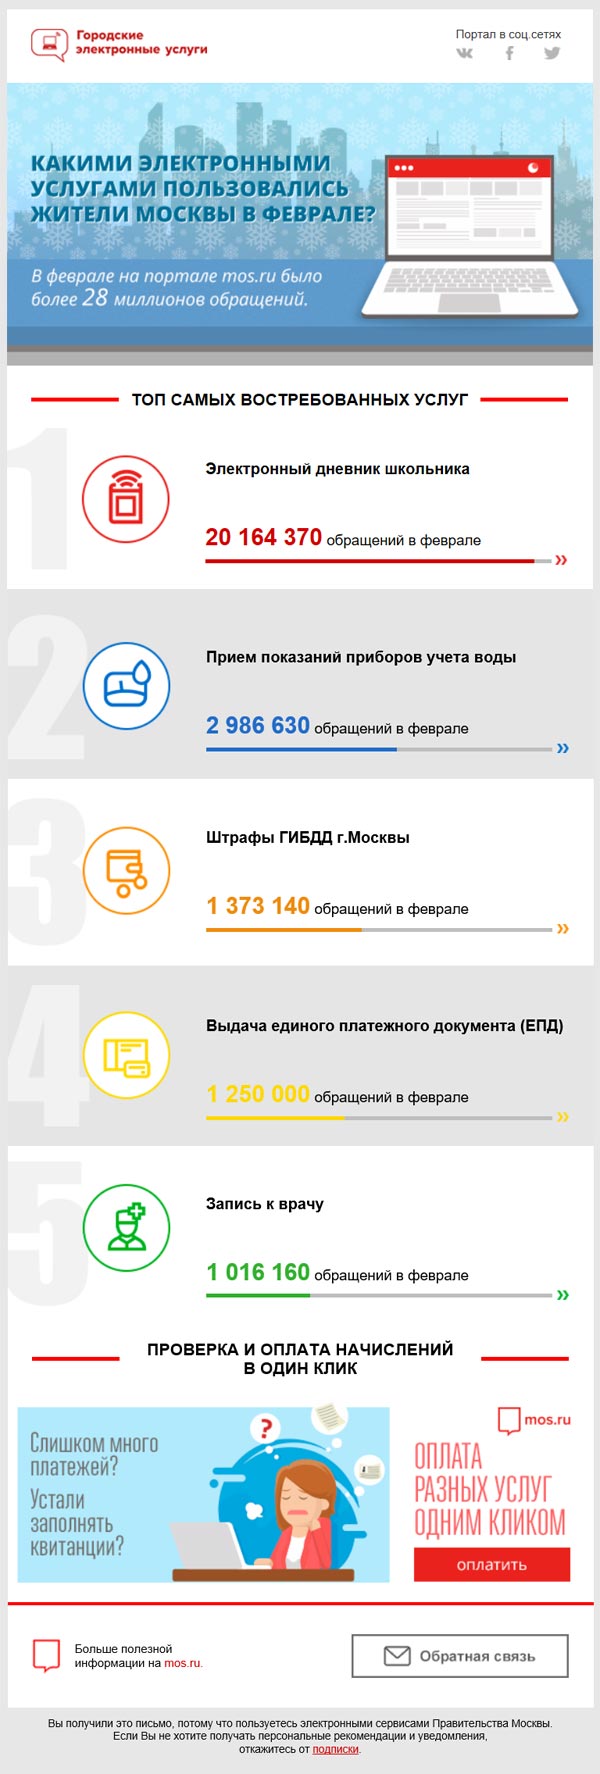 Какими услугами пользовались москвичи в феврале